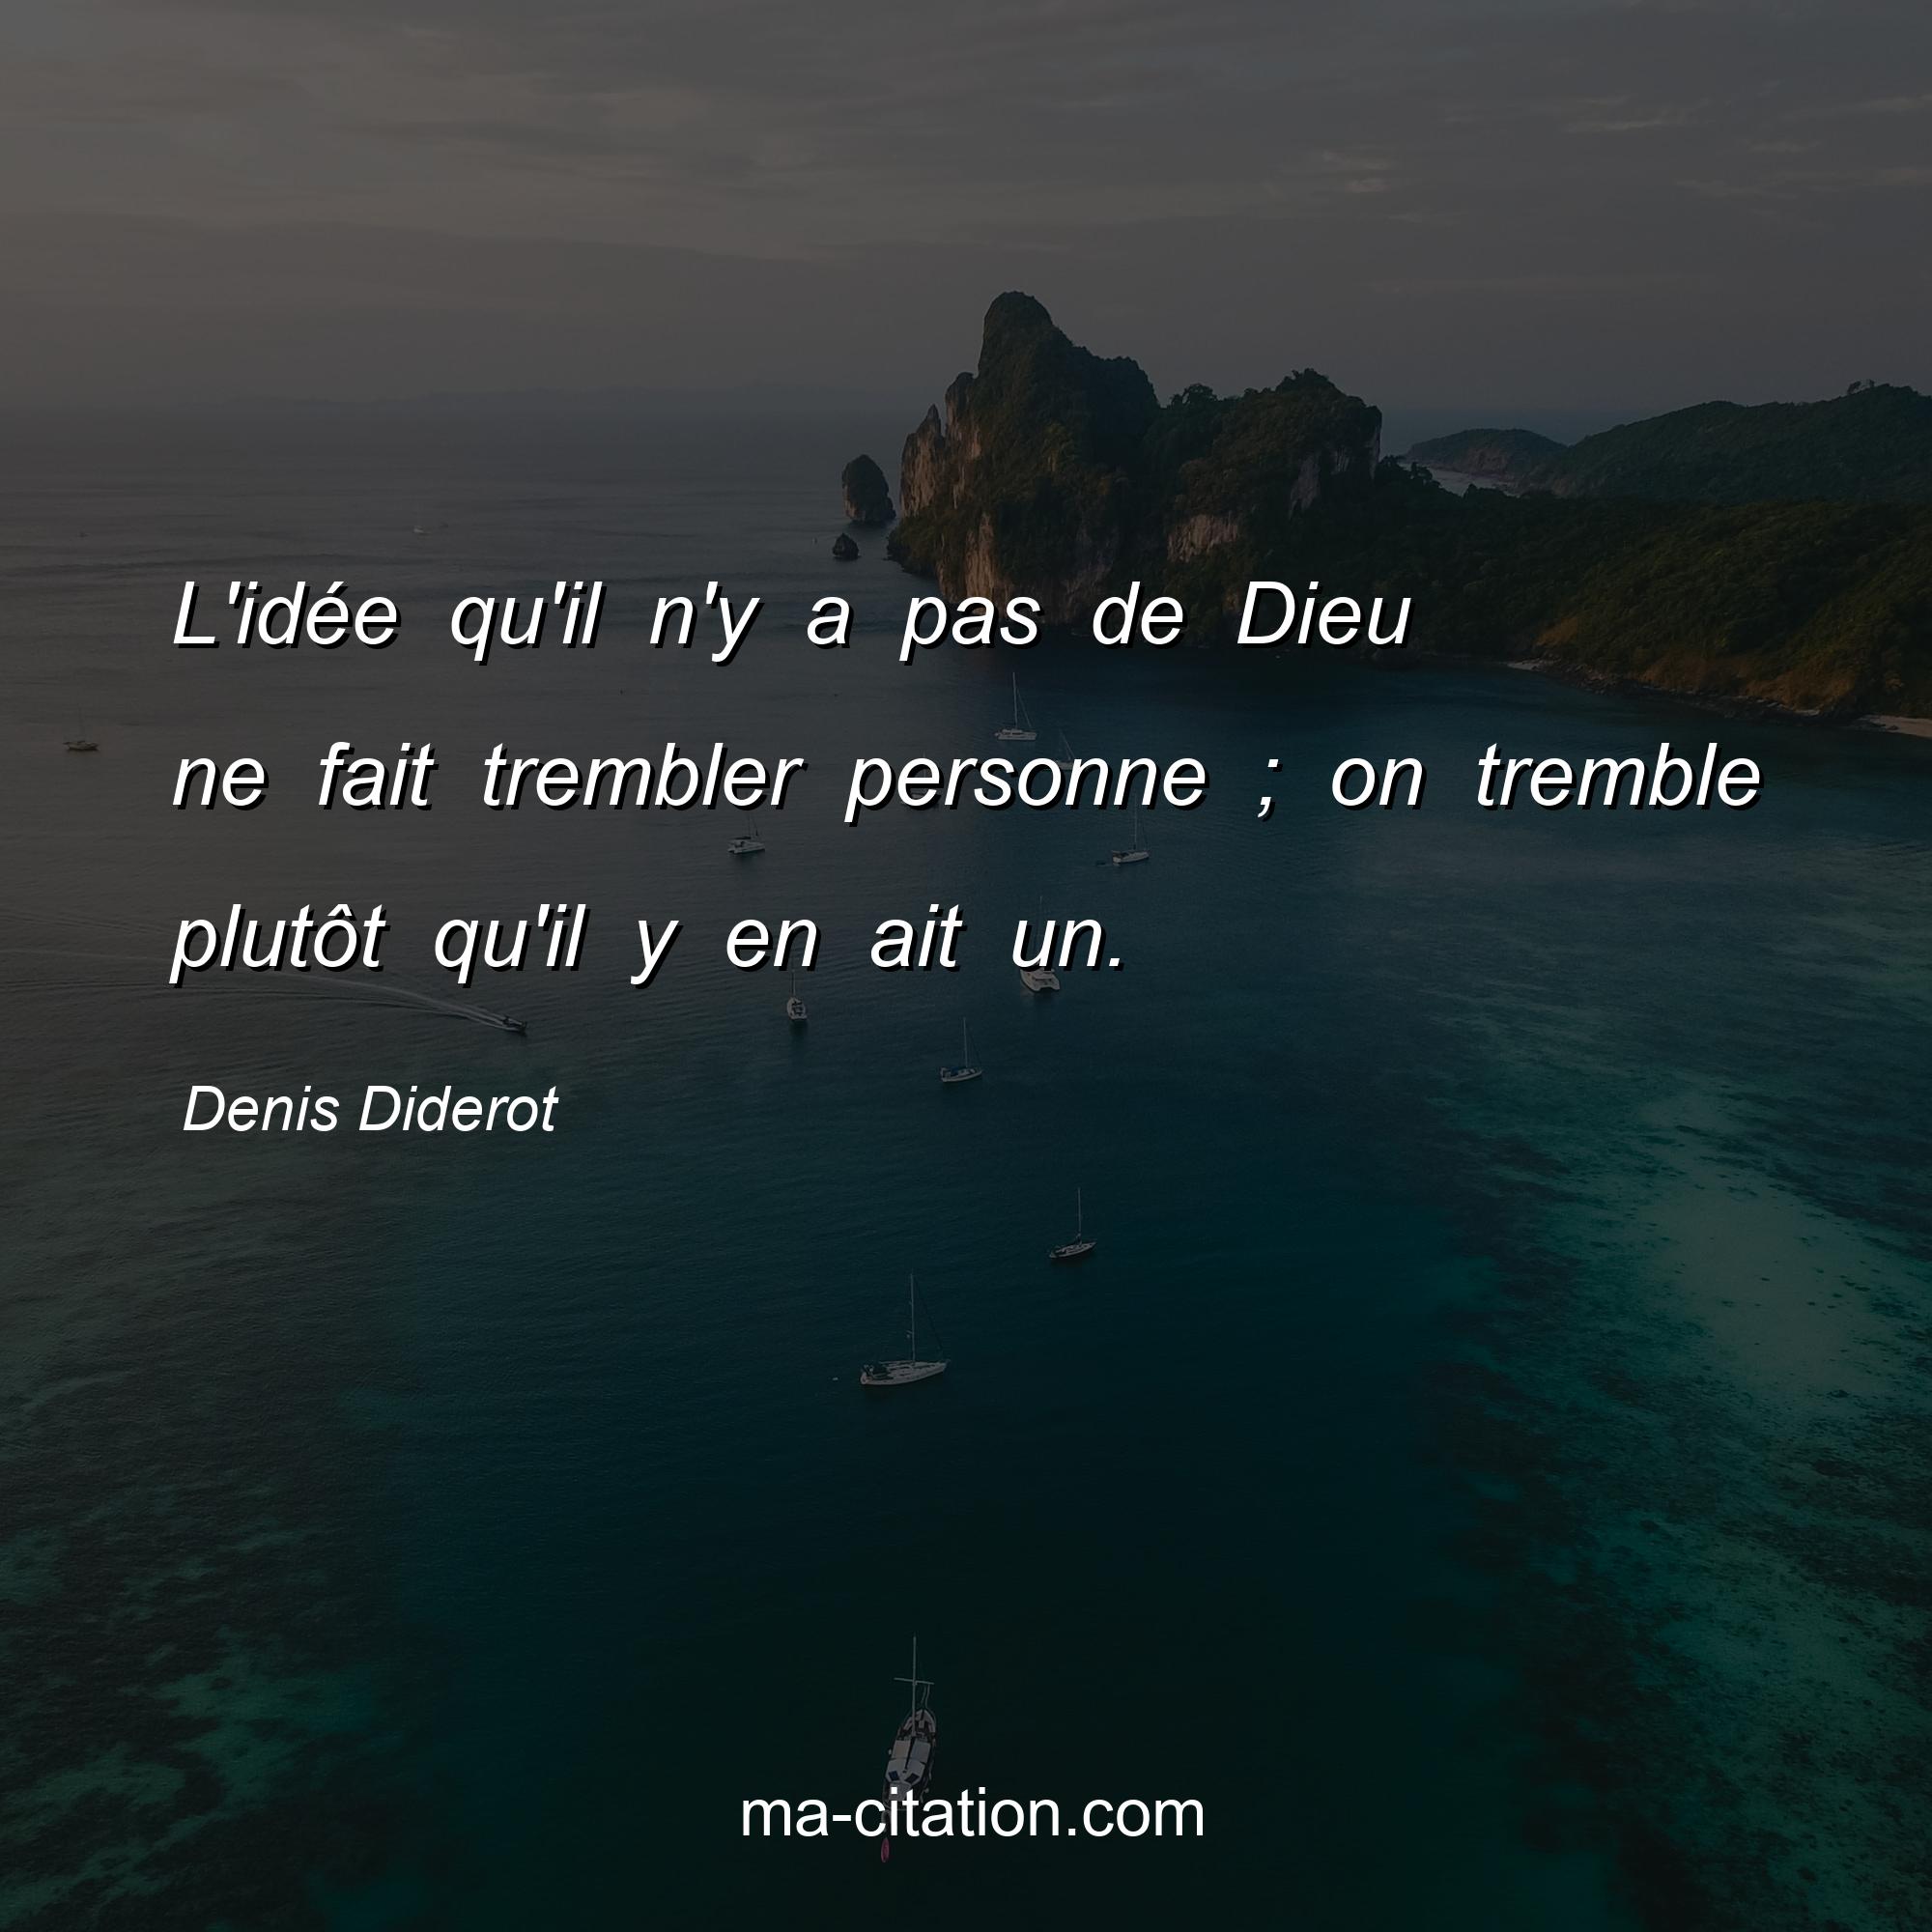 Denis Diderot : L'idée qu'il n'y a pas de Dieu ne fait trembler personne ; on tremble plutôt qu'il y en ait un.